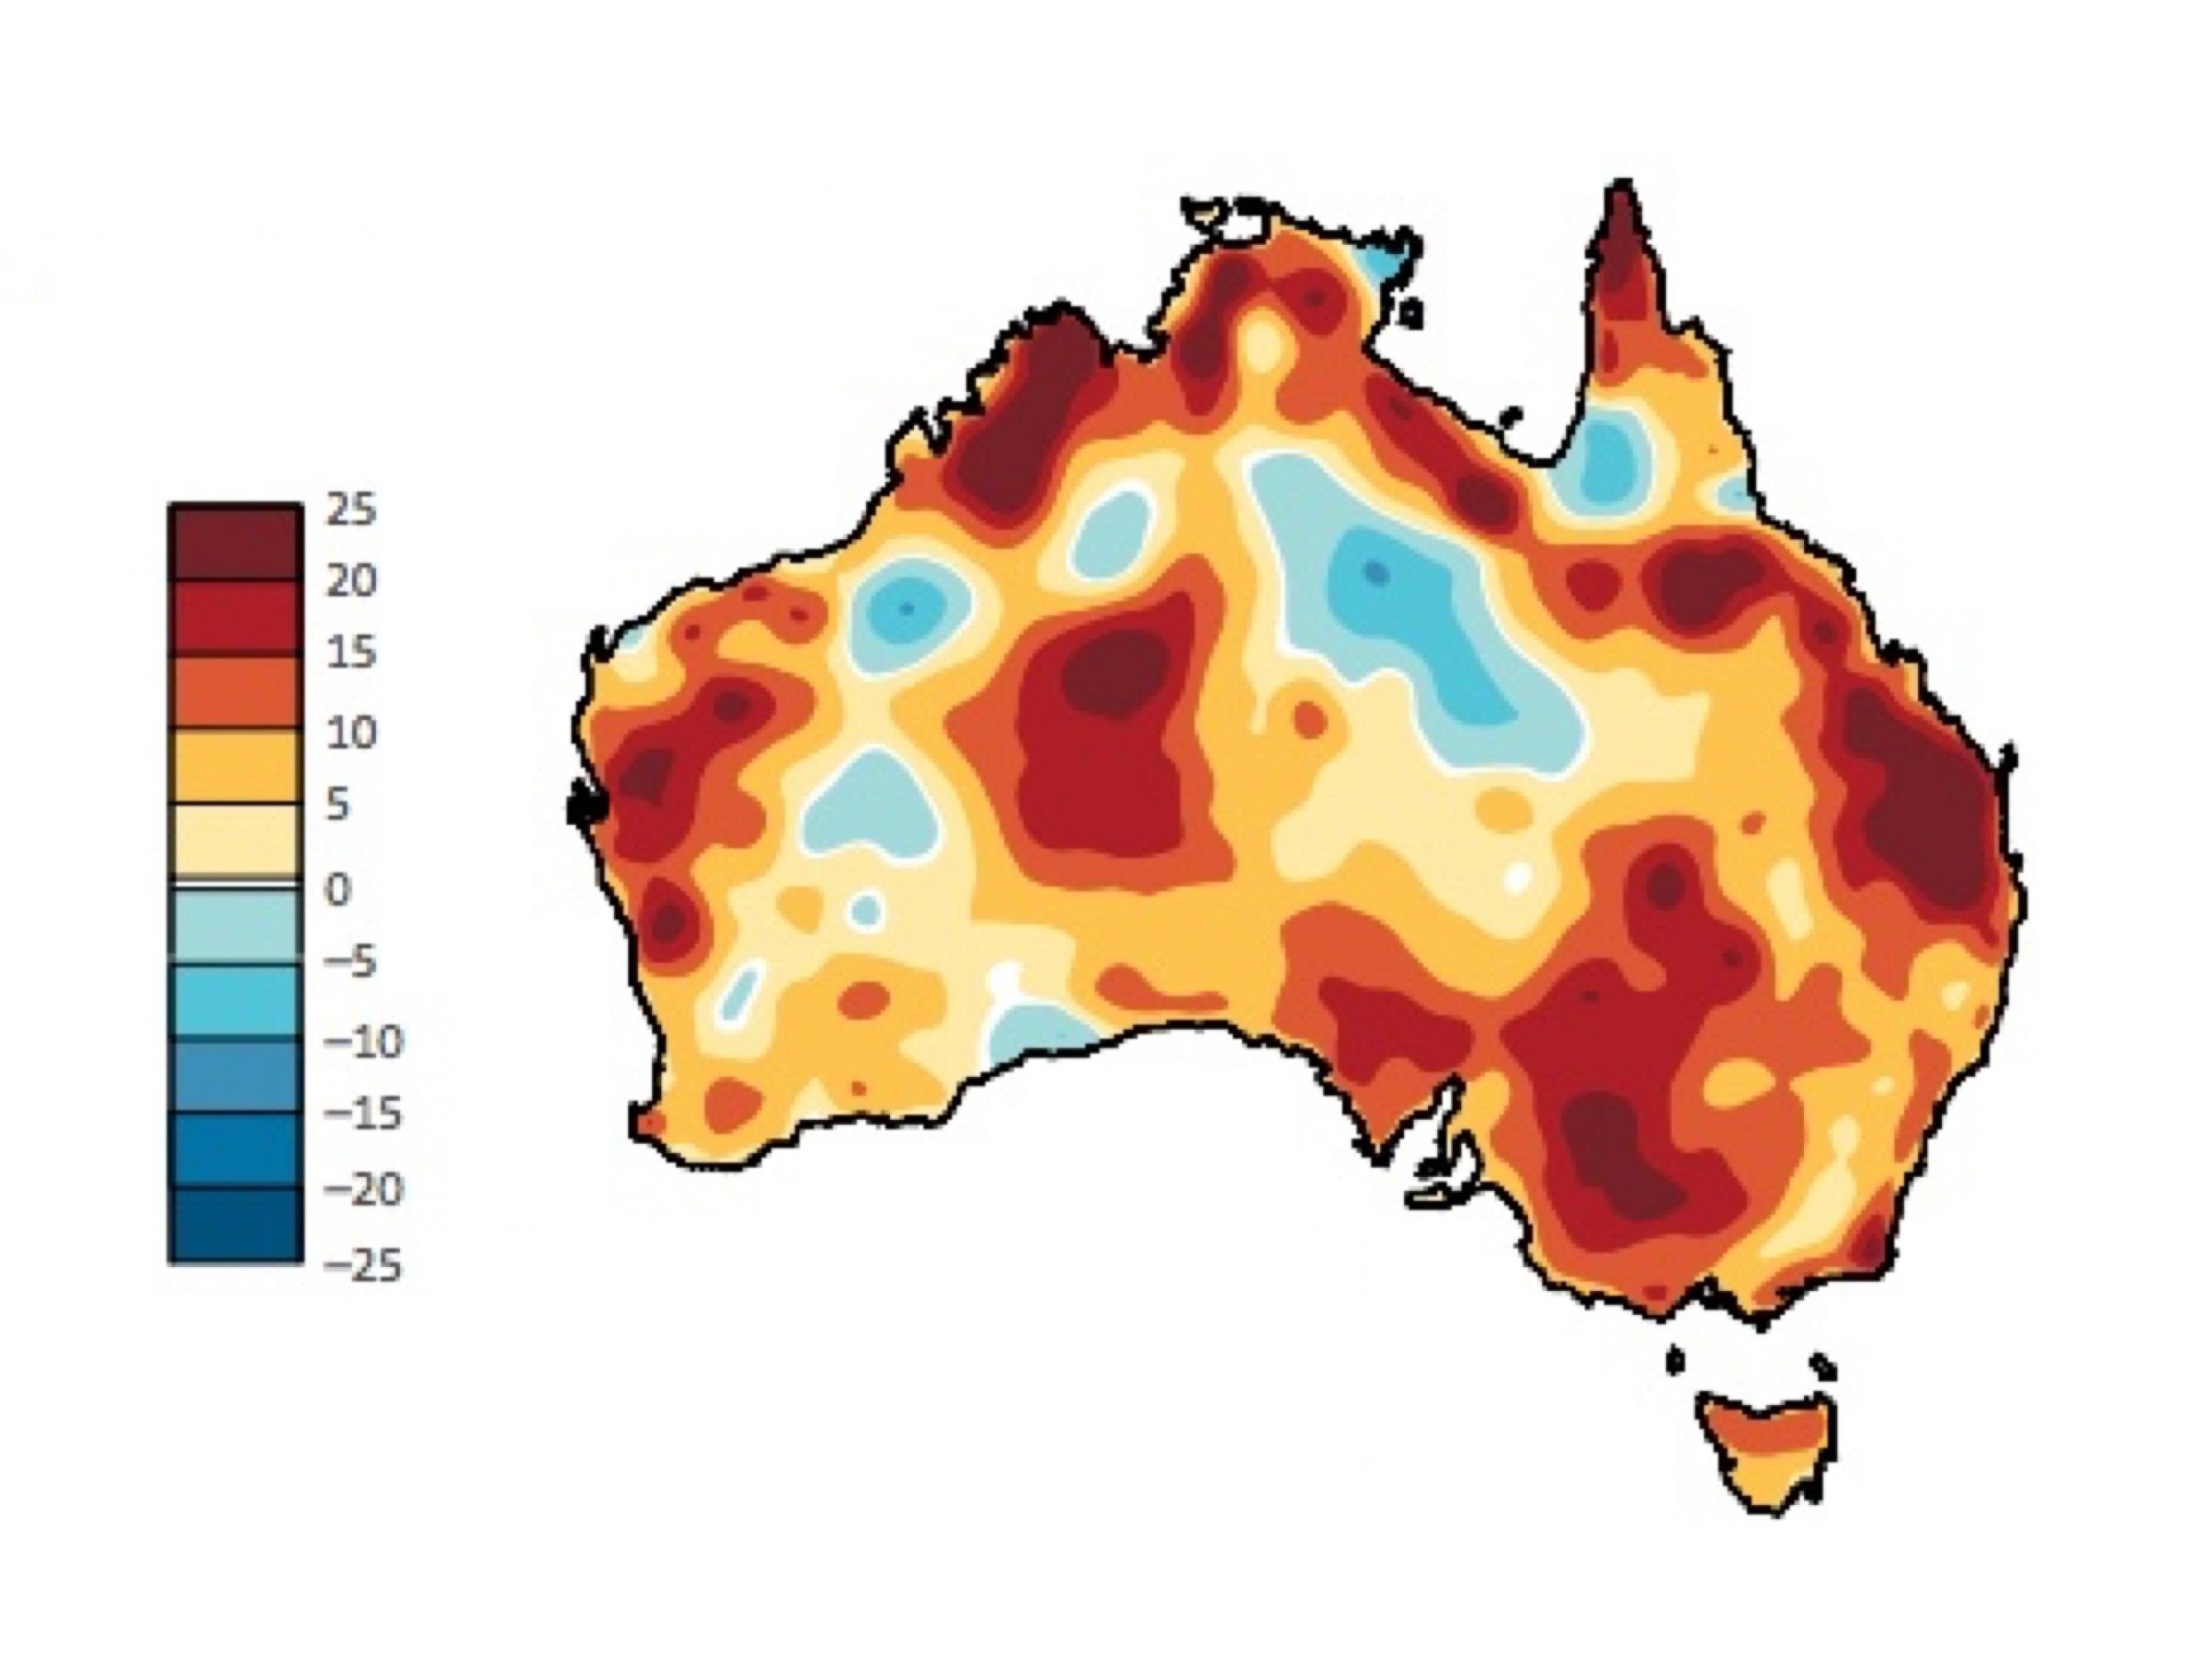 Die Graphik zeigt das Land Australien mit einer Farbcodierung. Orange und Rote Farbtöne geben eine Zunahme der sogenannten Feuertage wieder, blaue eine Abnahme. In weiten Teilen des Landes, vor allem an den Küsten, kam es im Untersuchungszeitraum zu einer Zunahme, regional um bis zur 25 Tage.